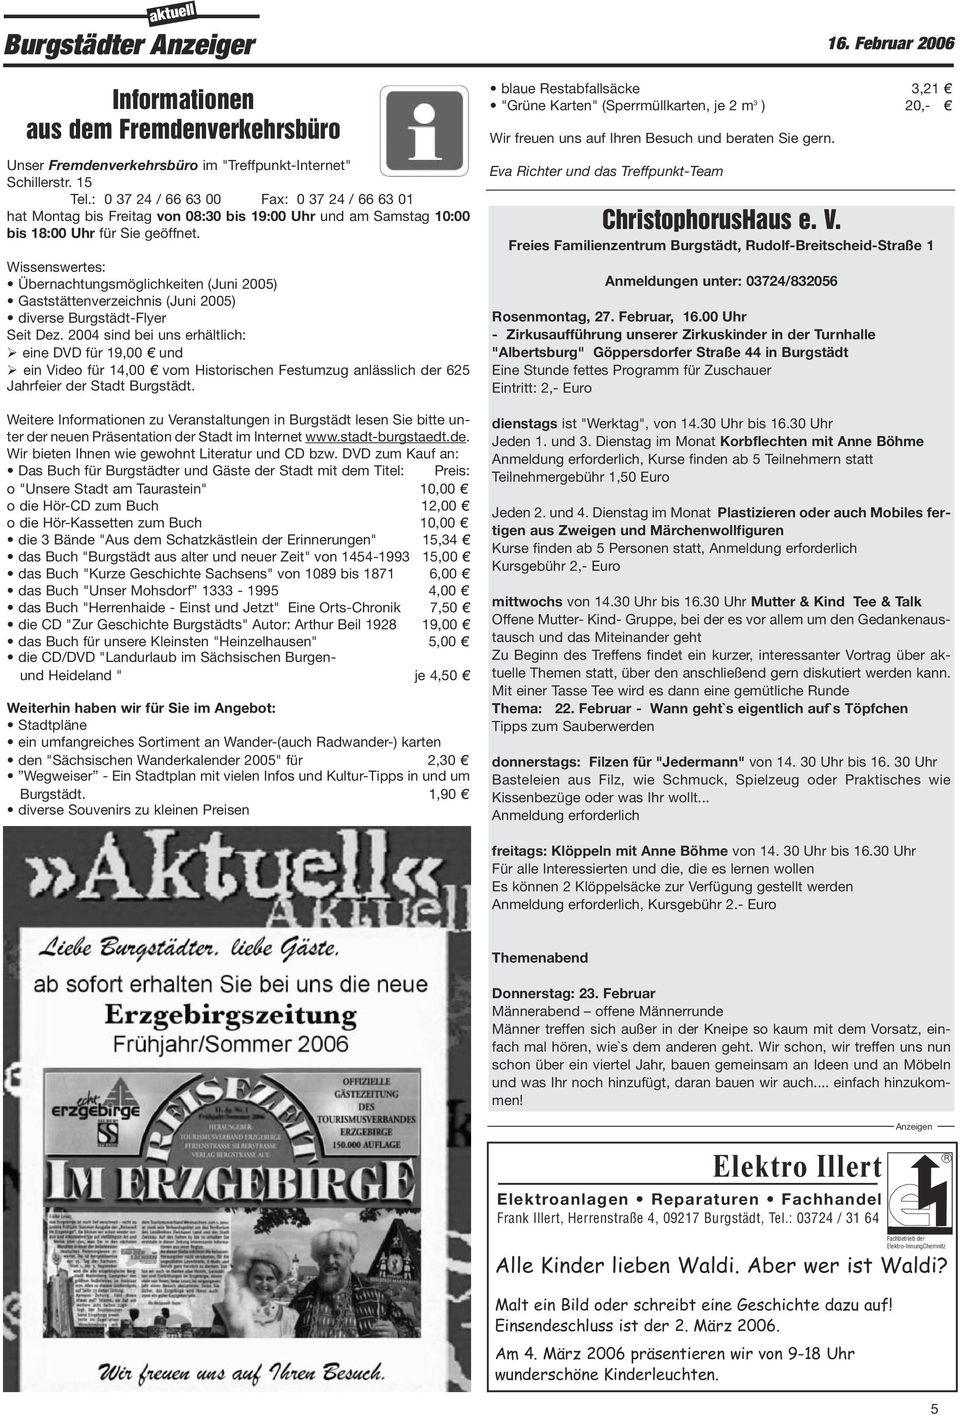 Wissenswertes: Übernachtungsmöglichkeiten (Juni 2005) Gaststättenverzeichnis (Juni 2005) diverse Burgstädt-Flyer Seit Dez.